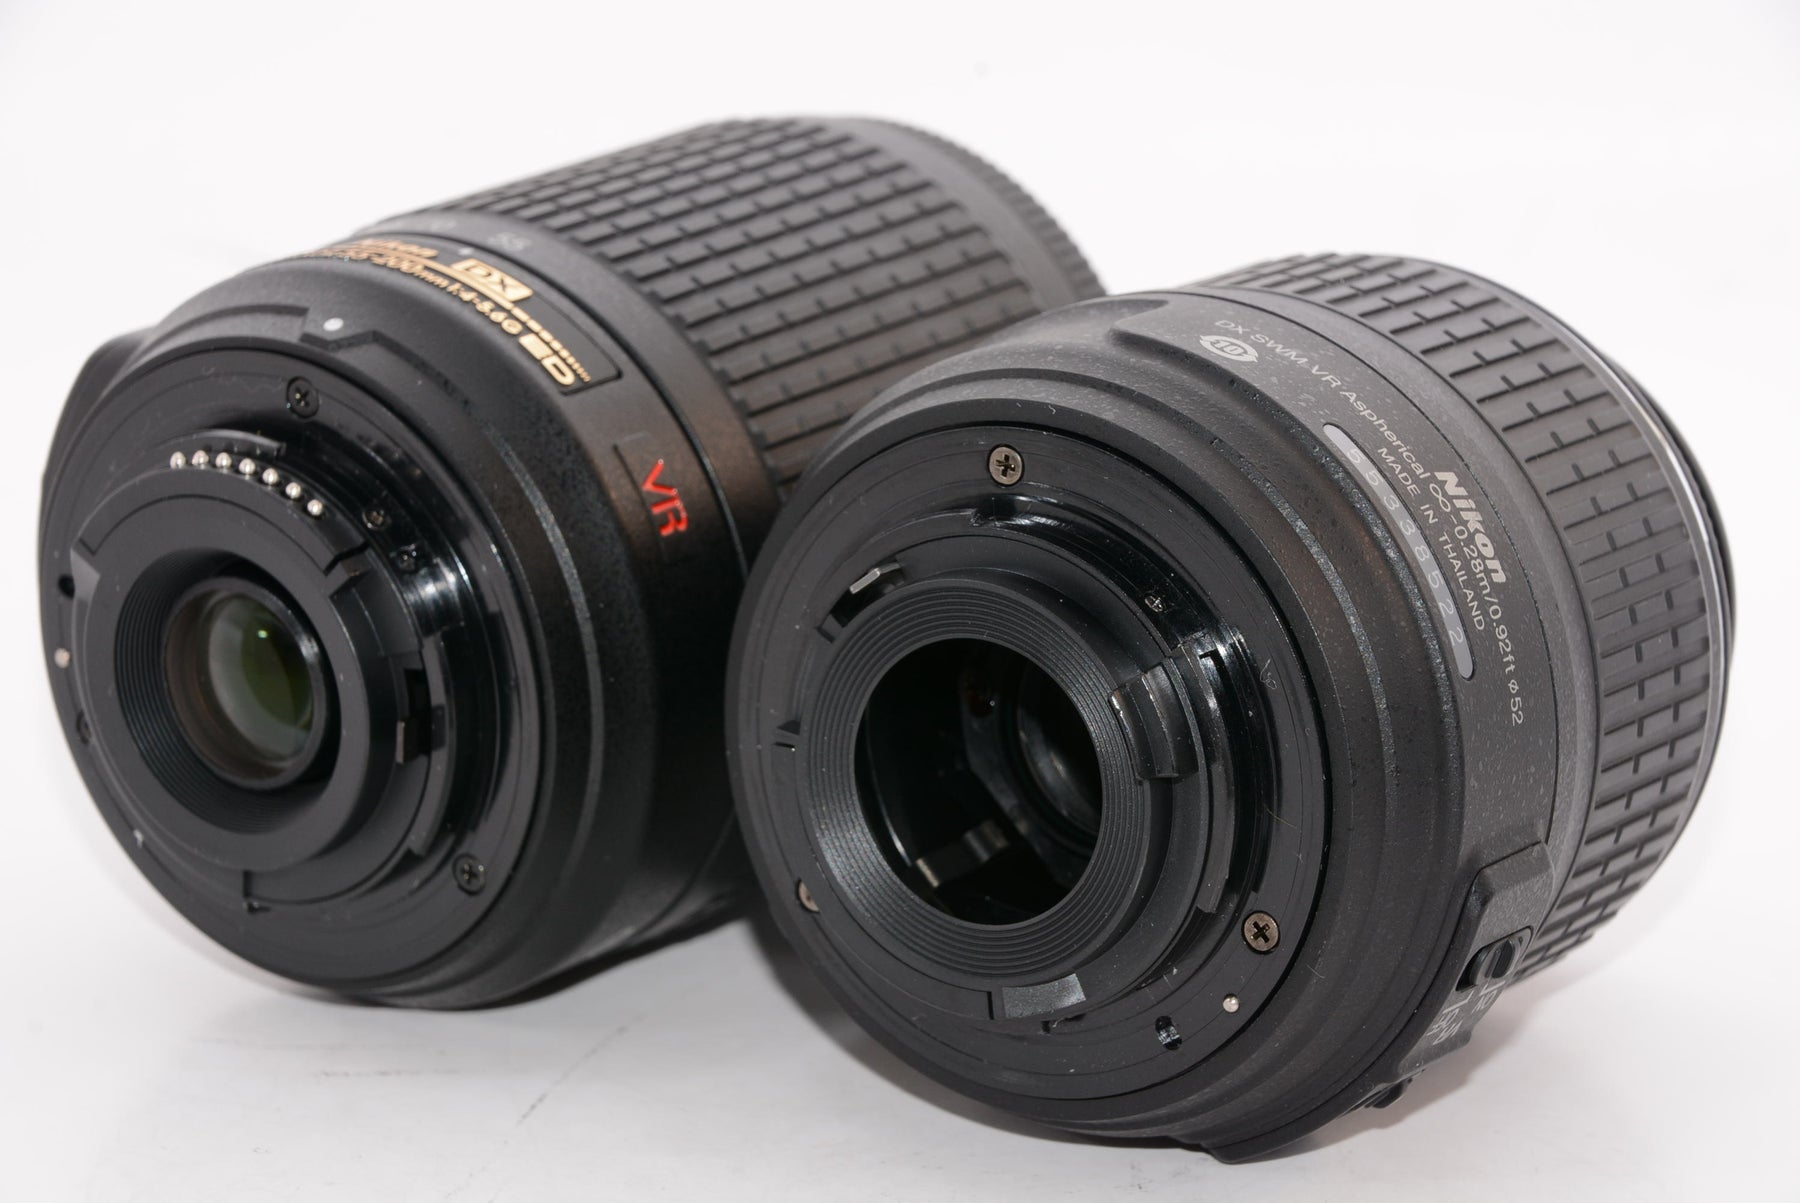 Nikon D3200 200mm 18-55mm/55-200mm